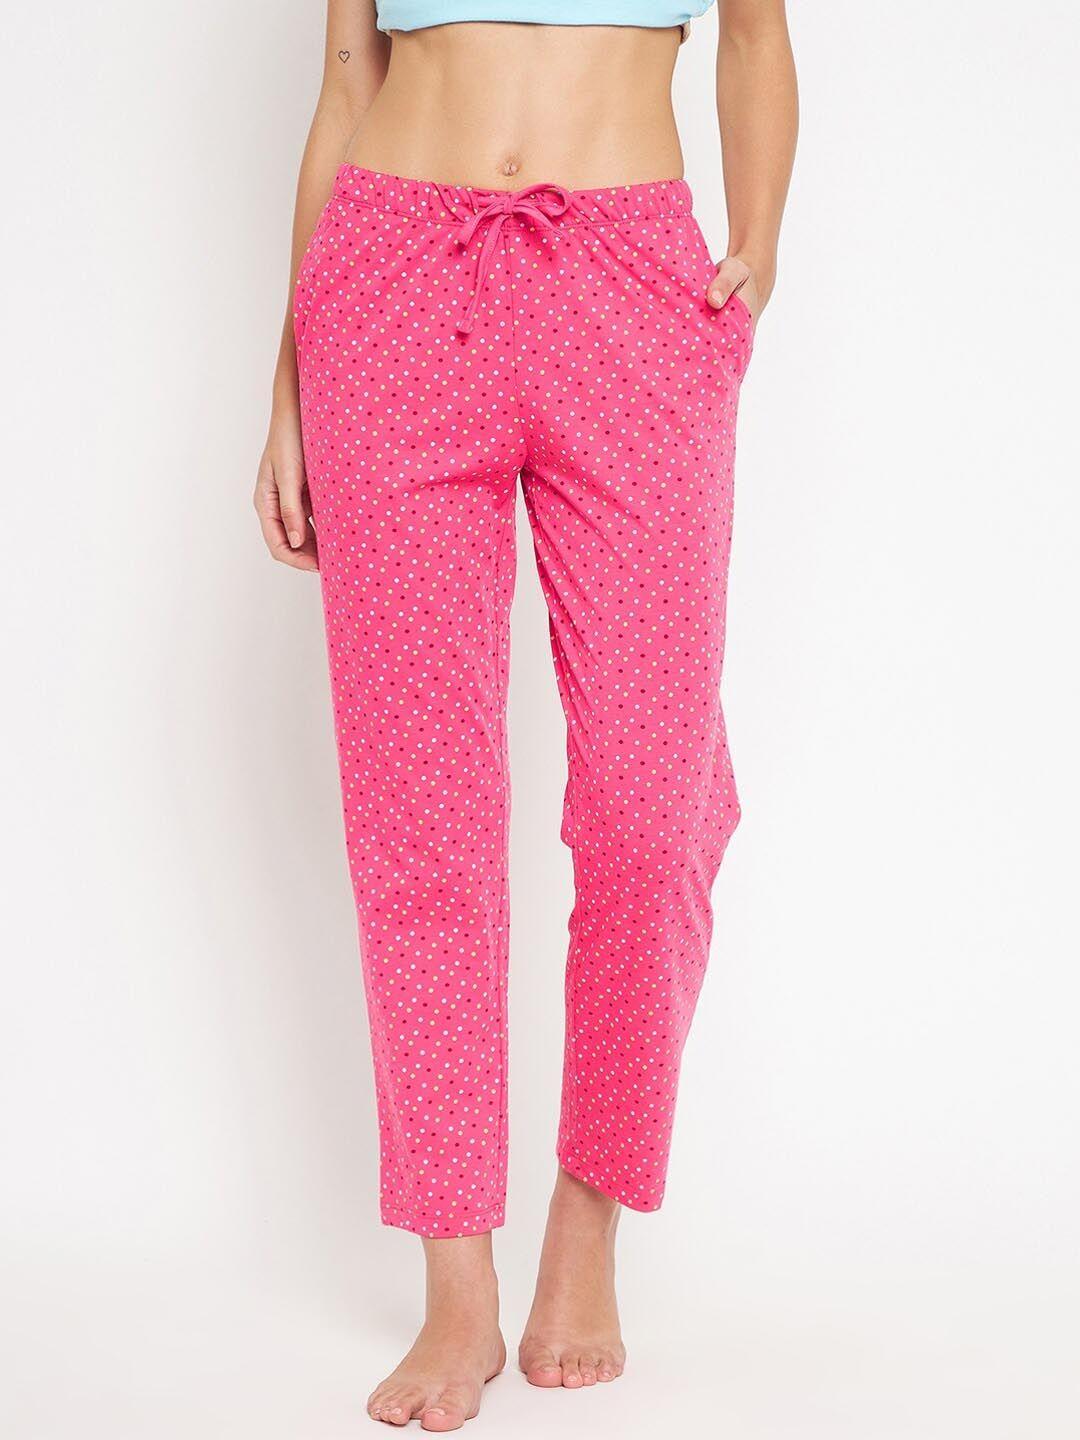 madame m secret women pink polka dots print cotton lounge pants